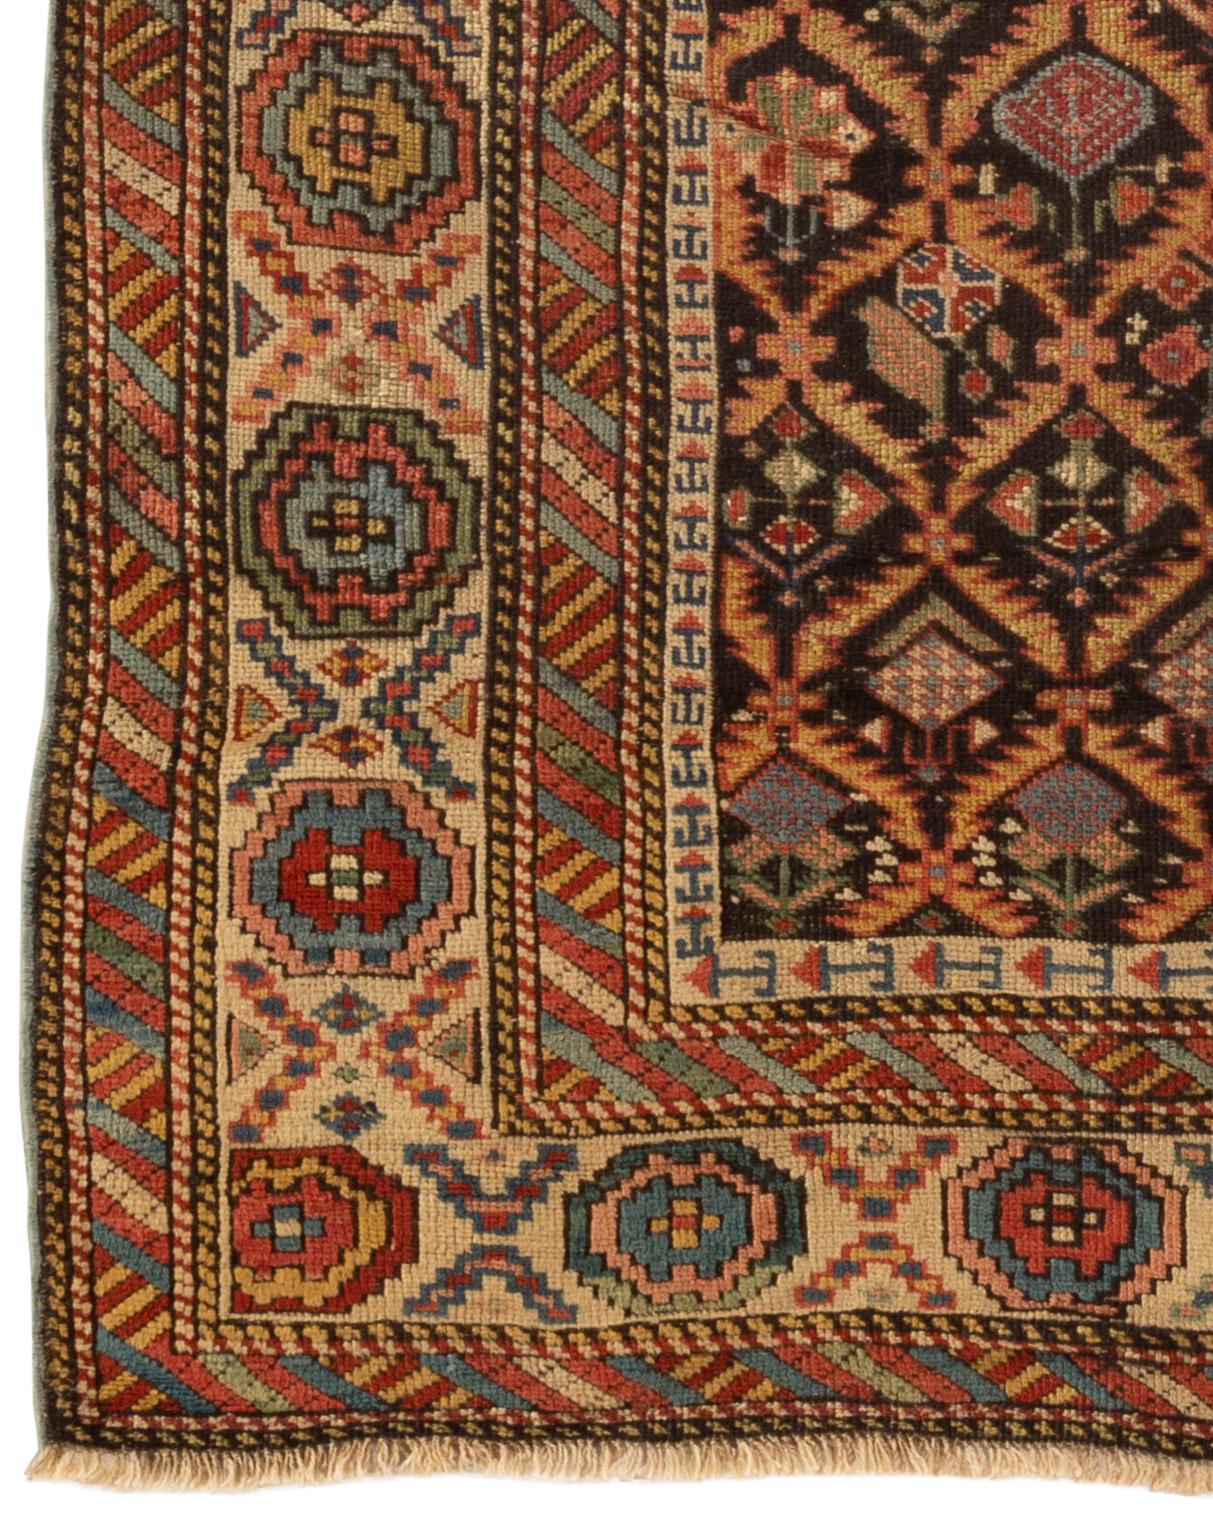 Antiker kaukasischer Schirwan-Teppich, um 1880. Das marineblaue Feld ist in Rauten unterteilt, die Blütenköpfe innerhalb der traditionellen Schirwan-Mehrfachbordüre einschließen, die den Teppich einrahmt. Diese Art von antiken kaukasischen Teppichen